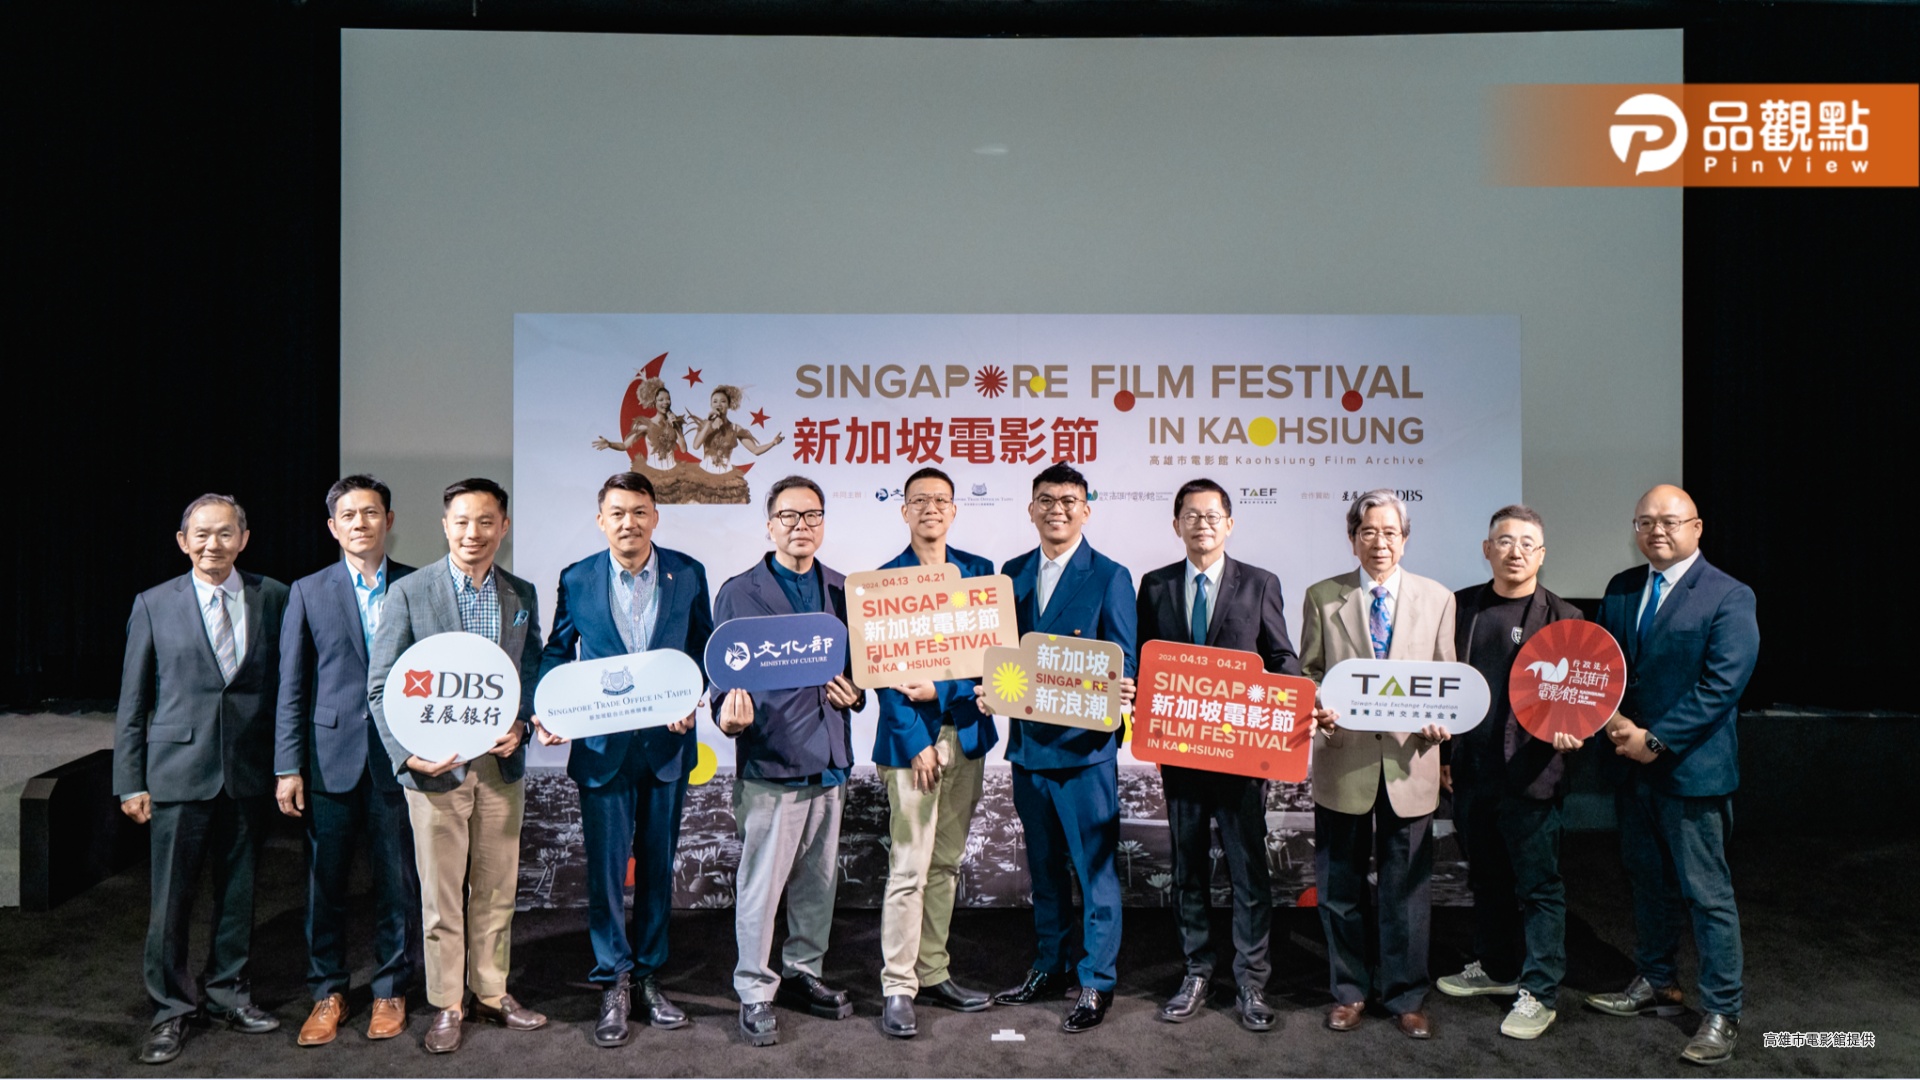 高雄電影館新加坡影展開幕  16部電影一窺新加坡十年浪潮